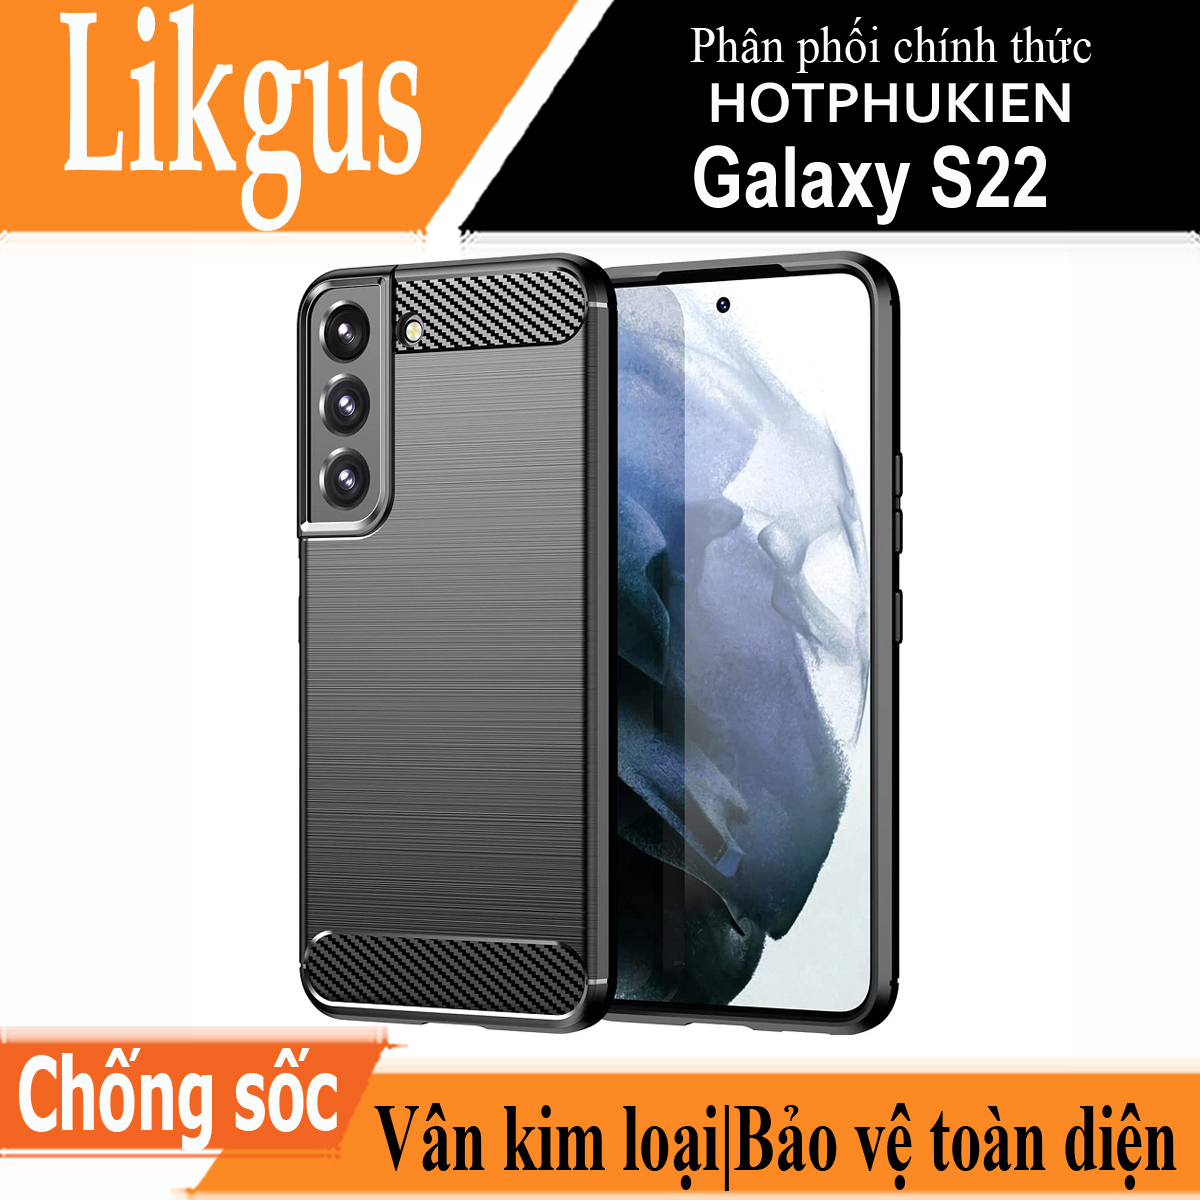 Ốp lưng chống sốc vân kim loại cho Samsung Galaxy S22 hiệu Likgus